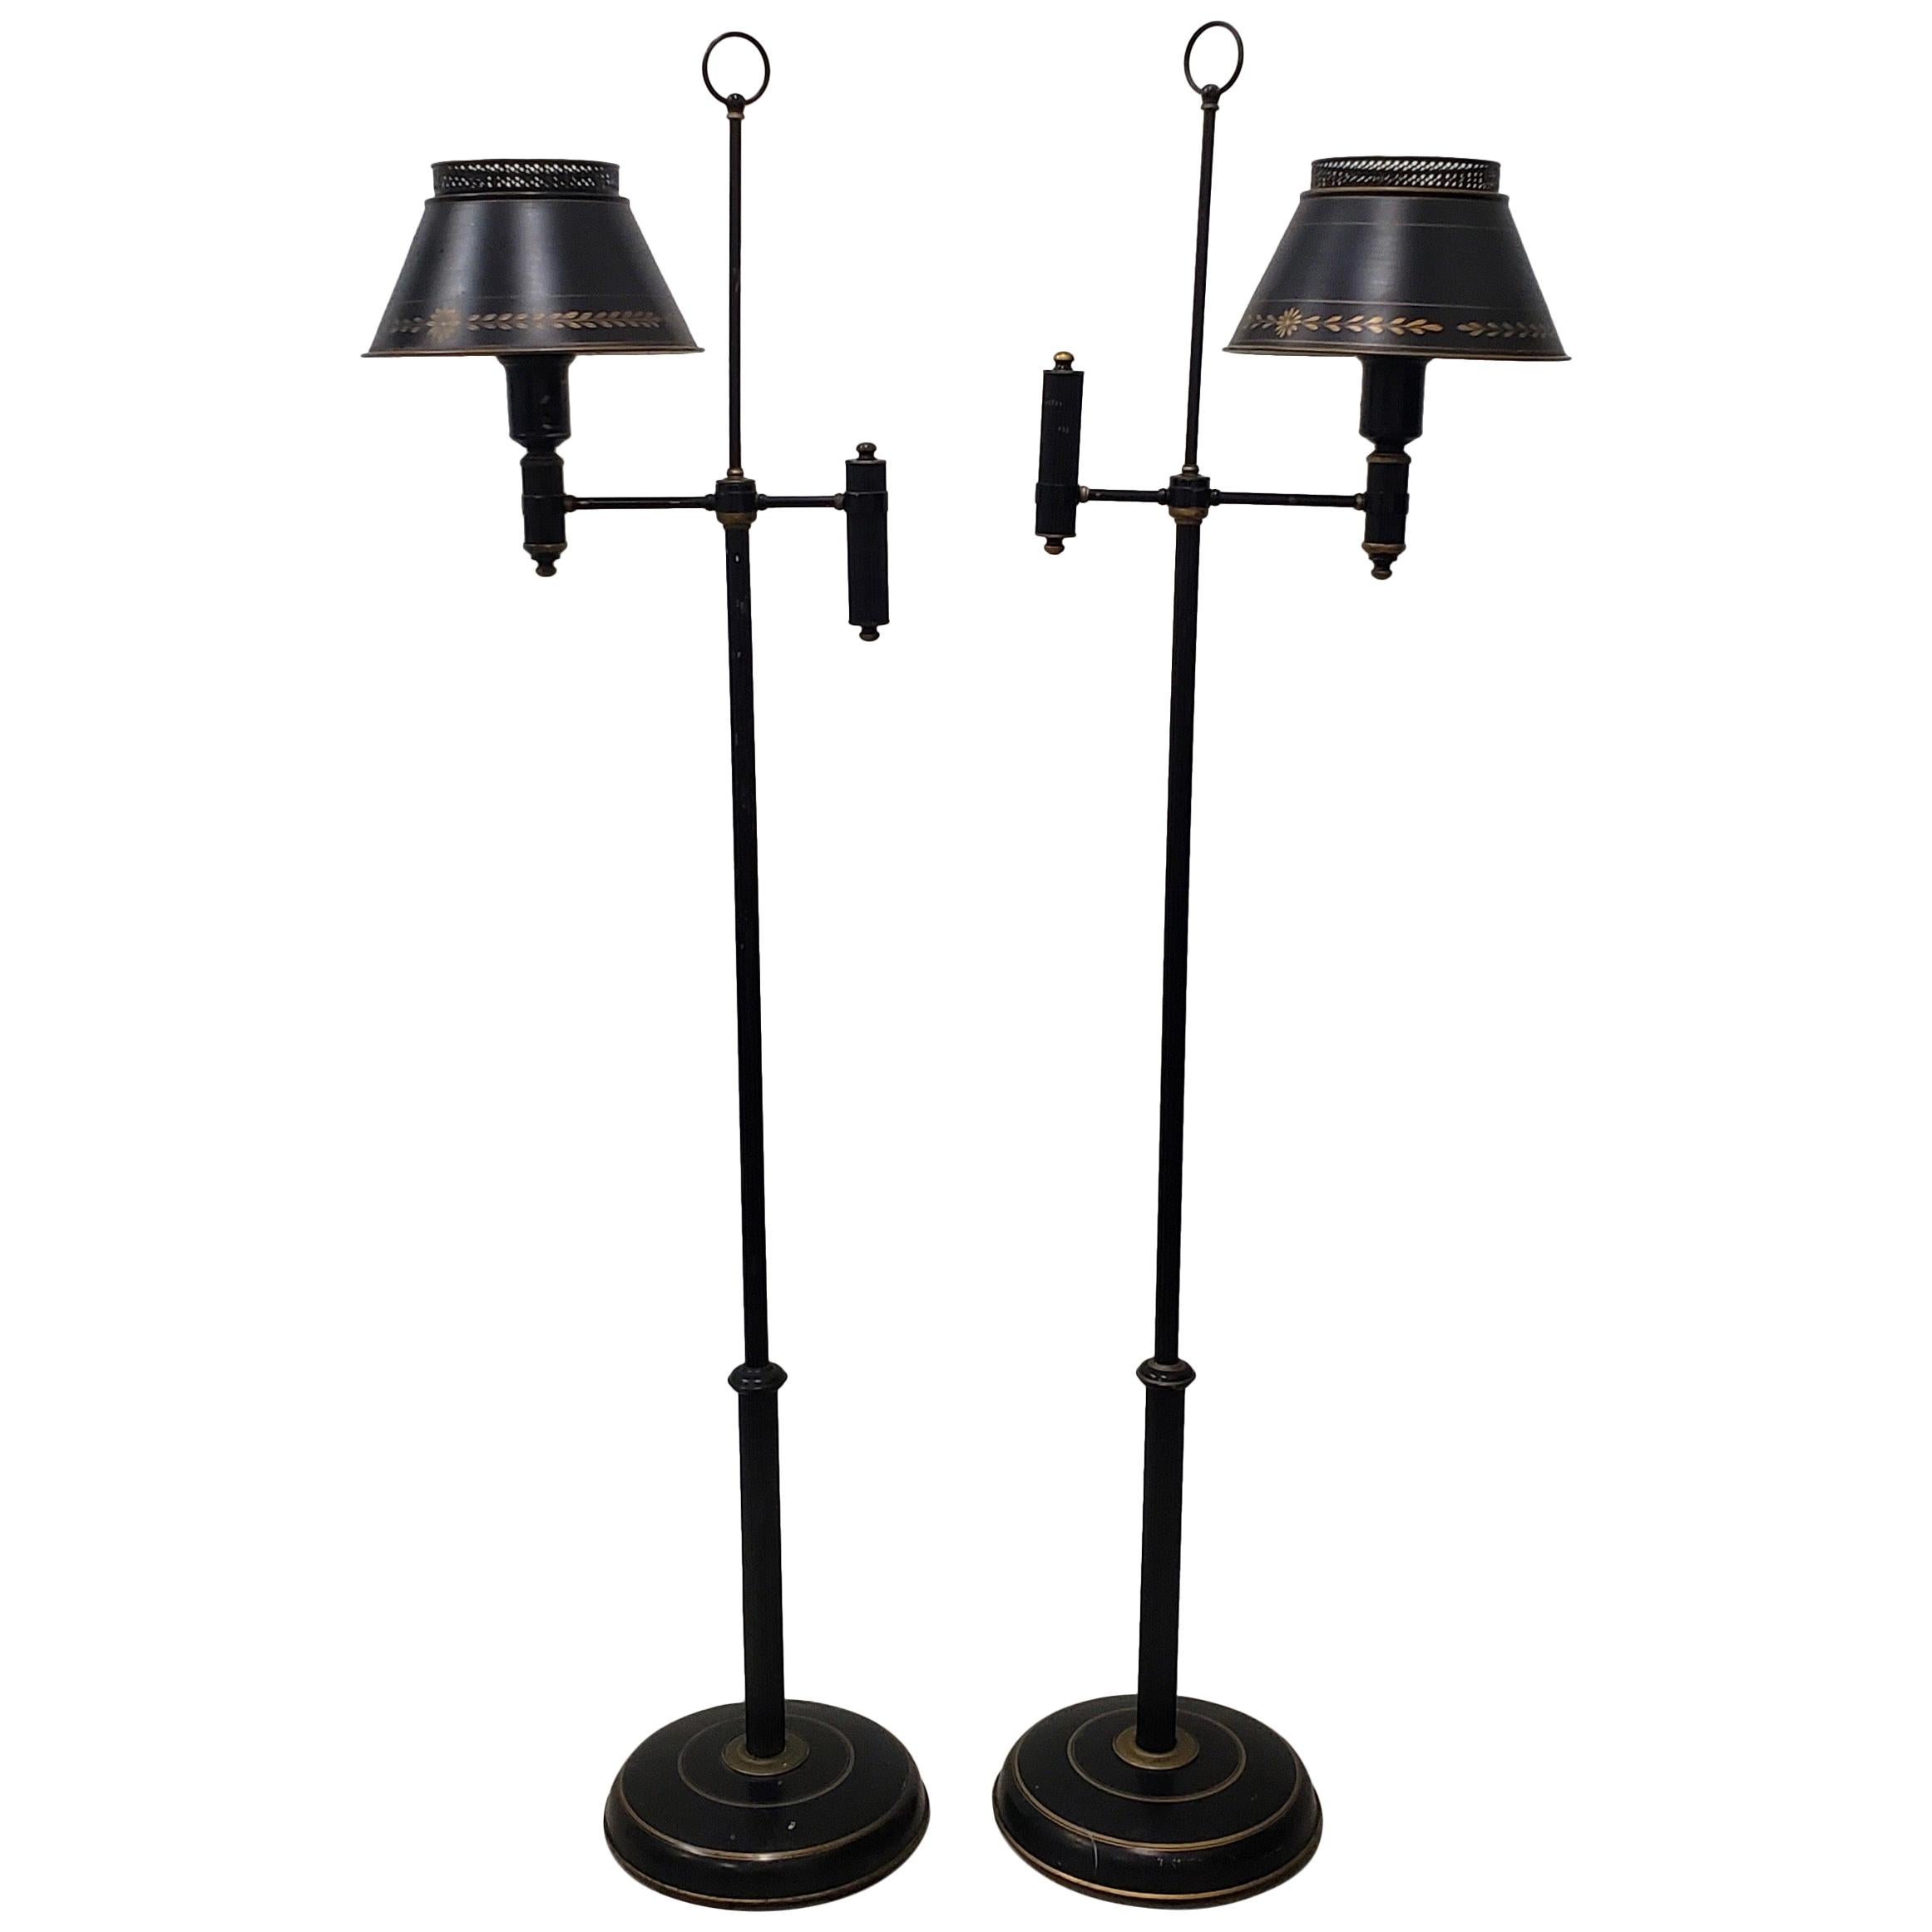 Pair of Midcentury Free Standing Toleware Floor Lamps